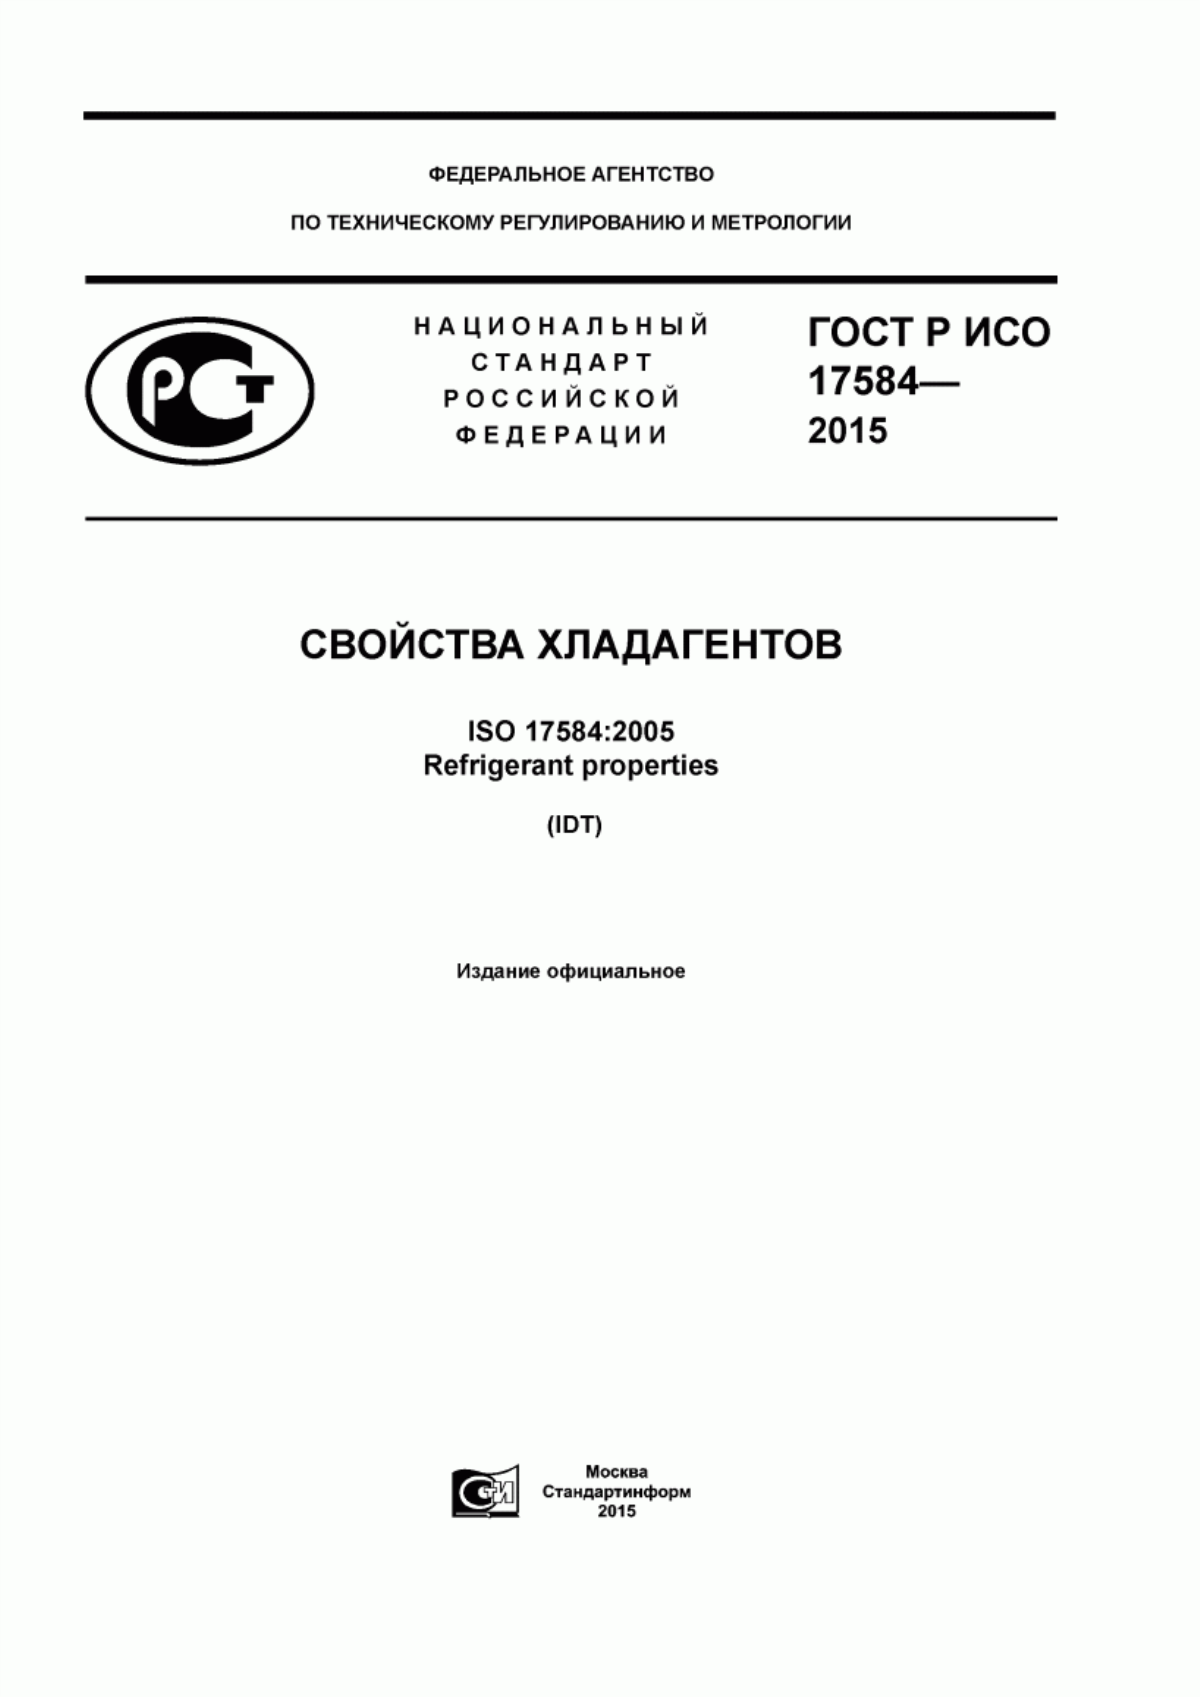 ГОСТ Р ИСО 17584-2015 Свойства хладагентов